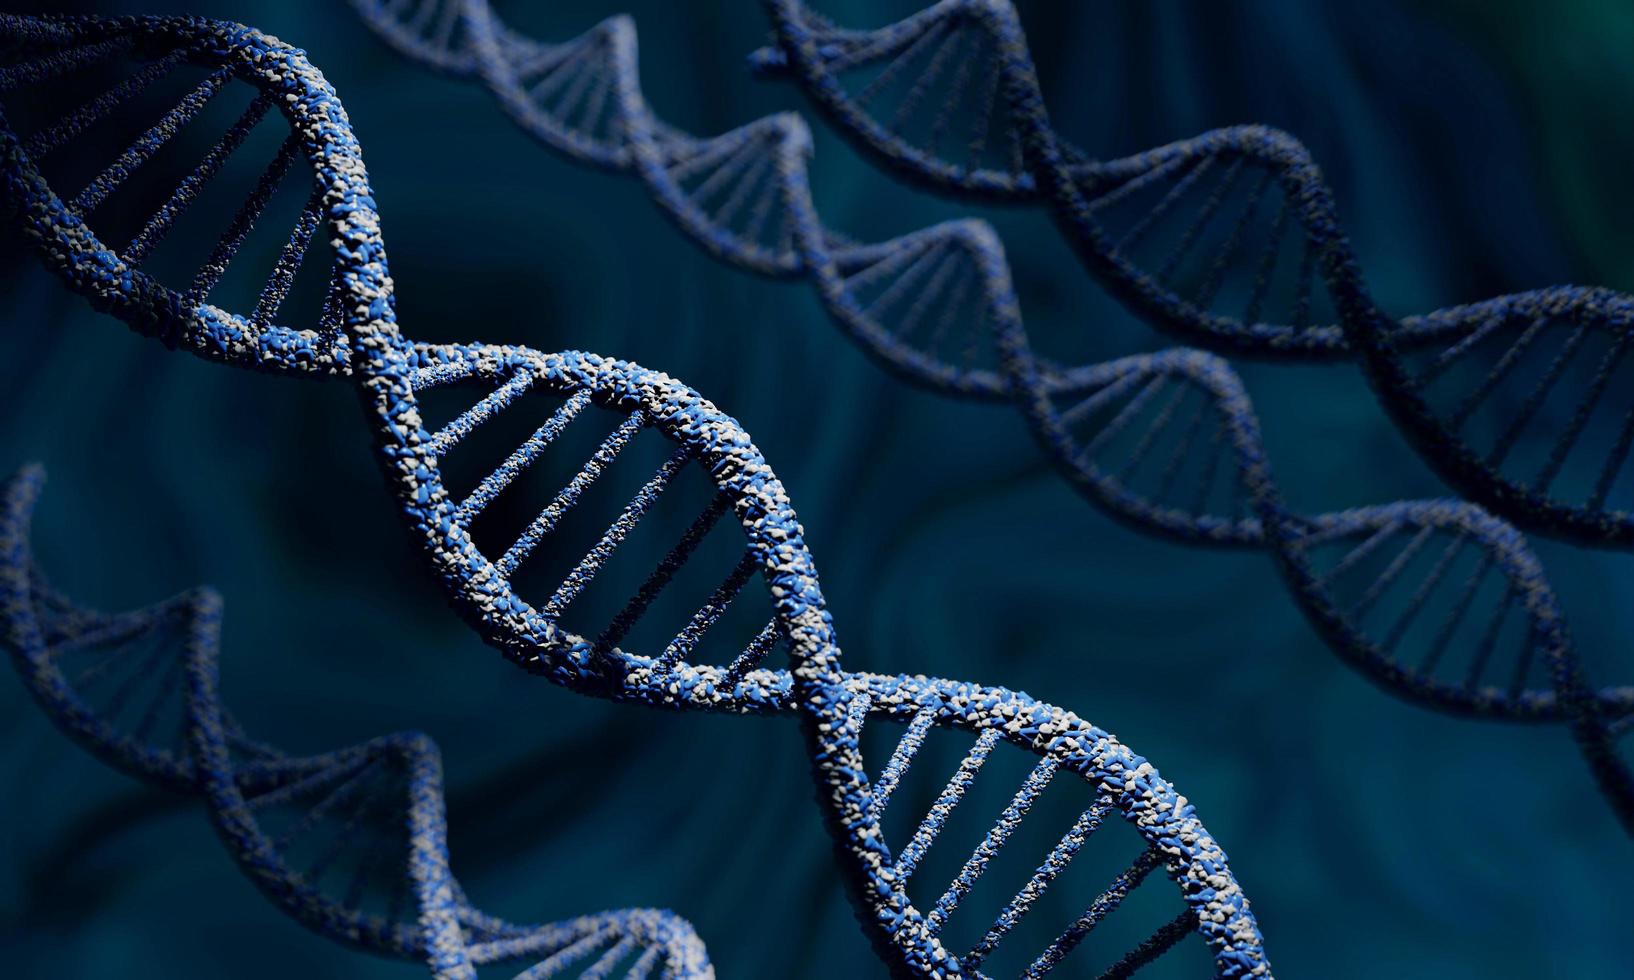 dna-molecuul spiraalstructuren op abstracte donkerblauwe achtergrond. biologie, wetenschap en medische technologie concept. 3D illustratie en weergave foto